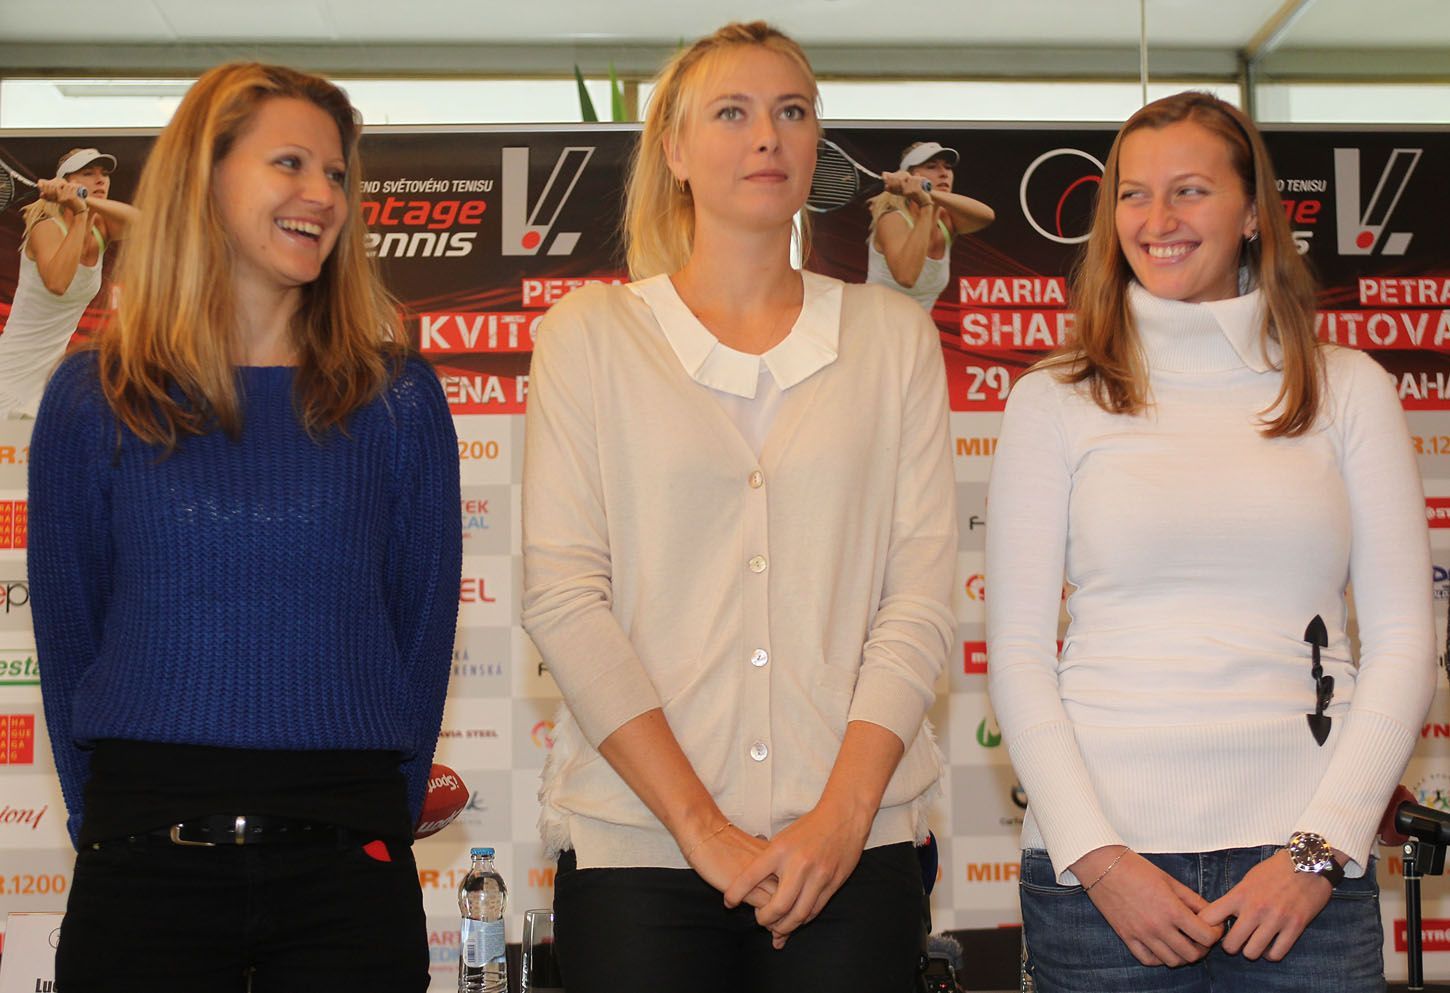 Ruská tenistka Maria Šarapovová během exhibice Advantage Tennis 2012 v Praze.